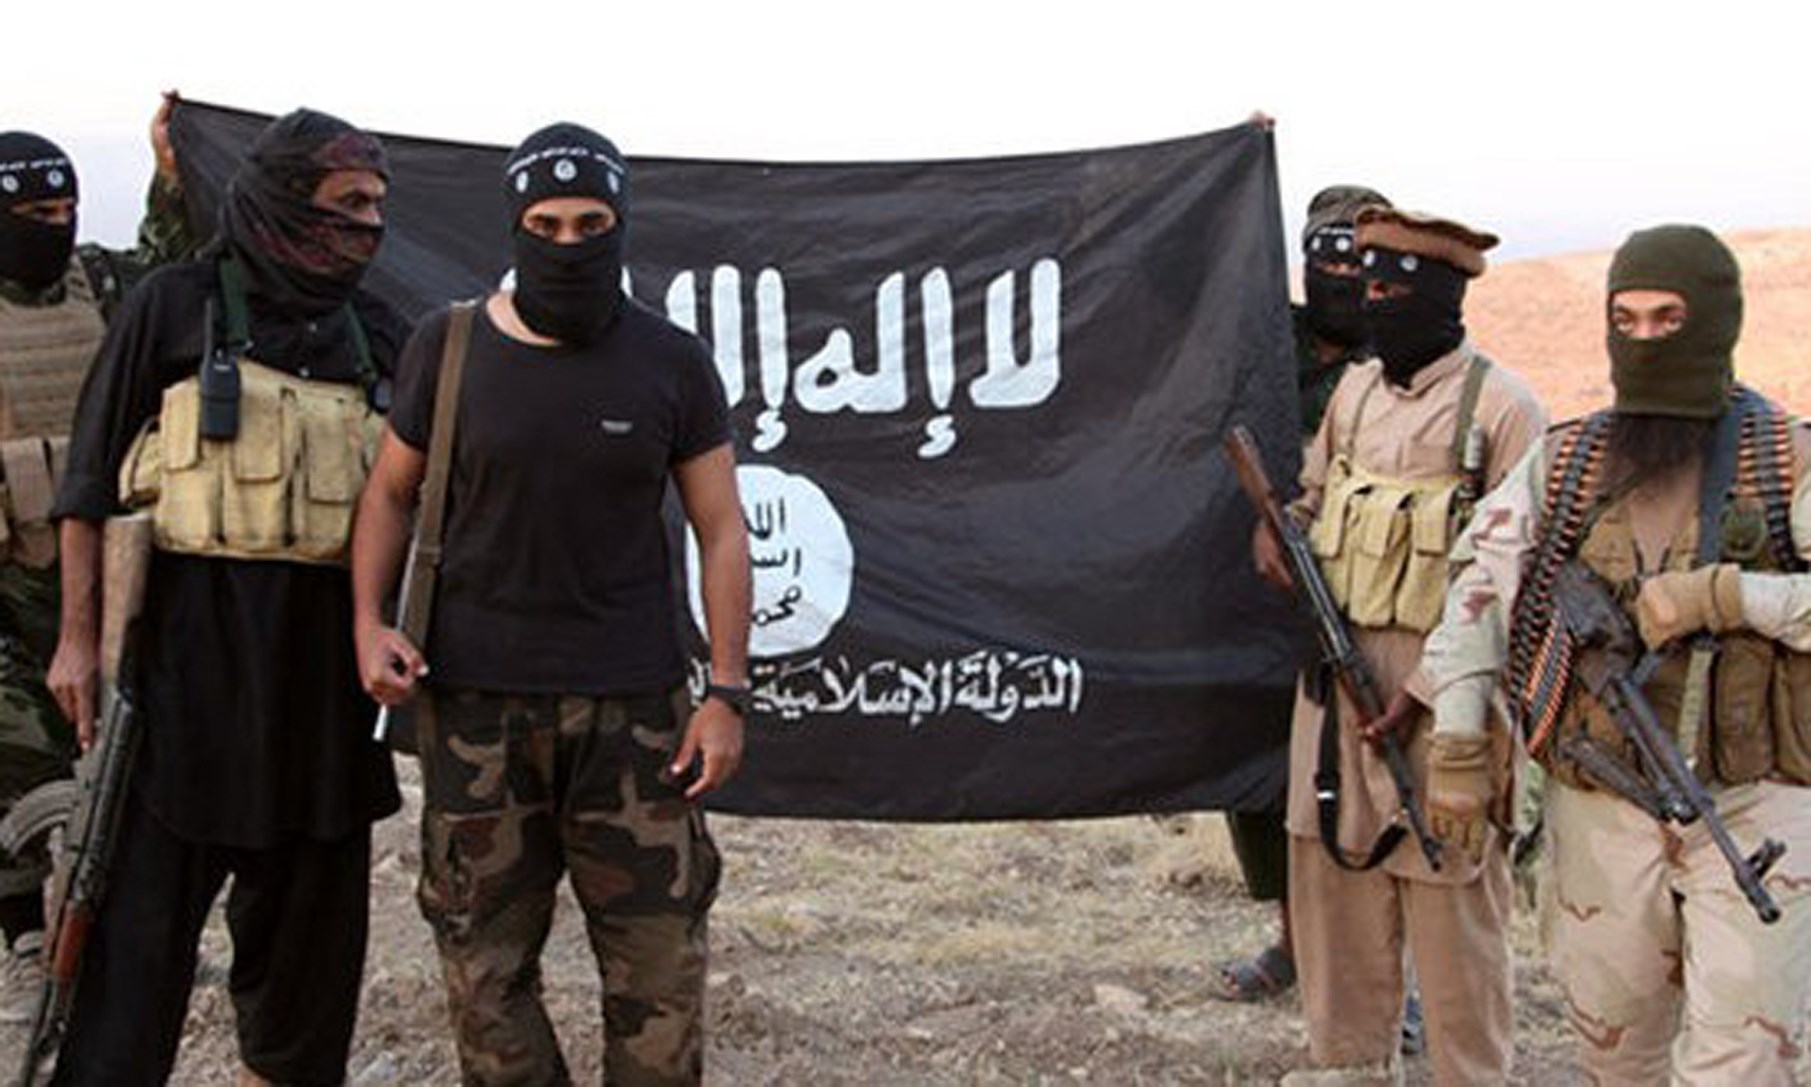 “يوروبول” تحقق في إنشاء داعش شبكة تواصل اجتماعي للدعاية والتمويل